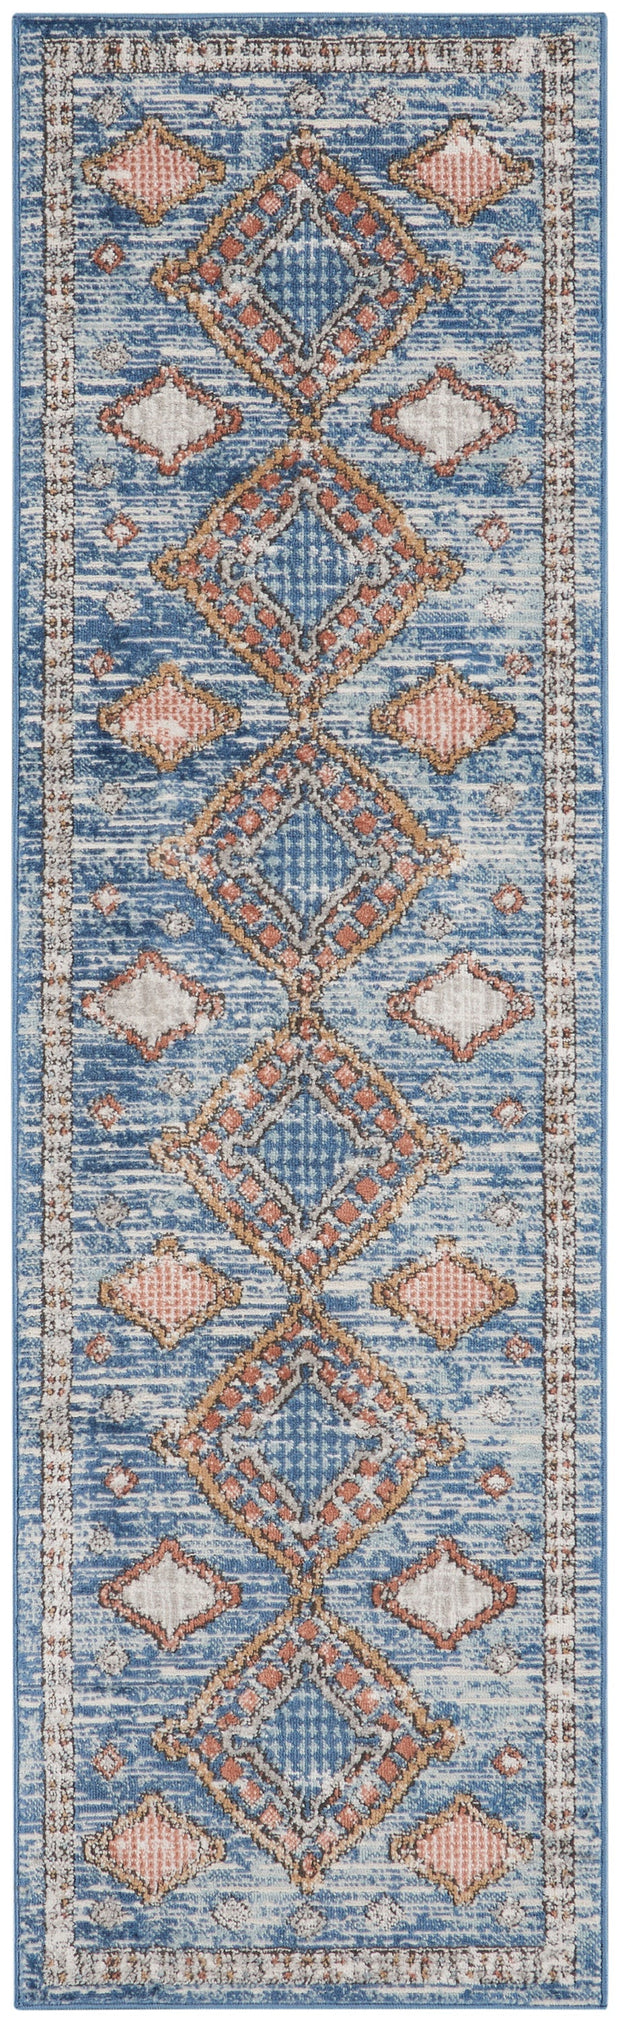 quarry blue rug by nourison 99446820327 redo 2